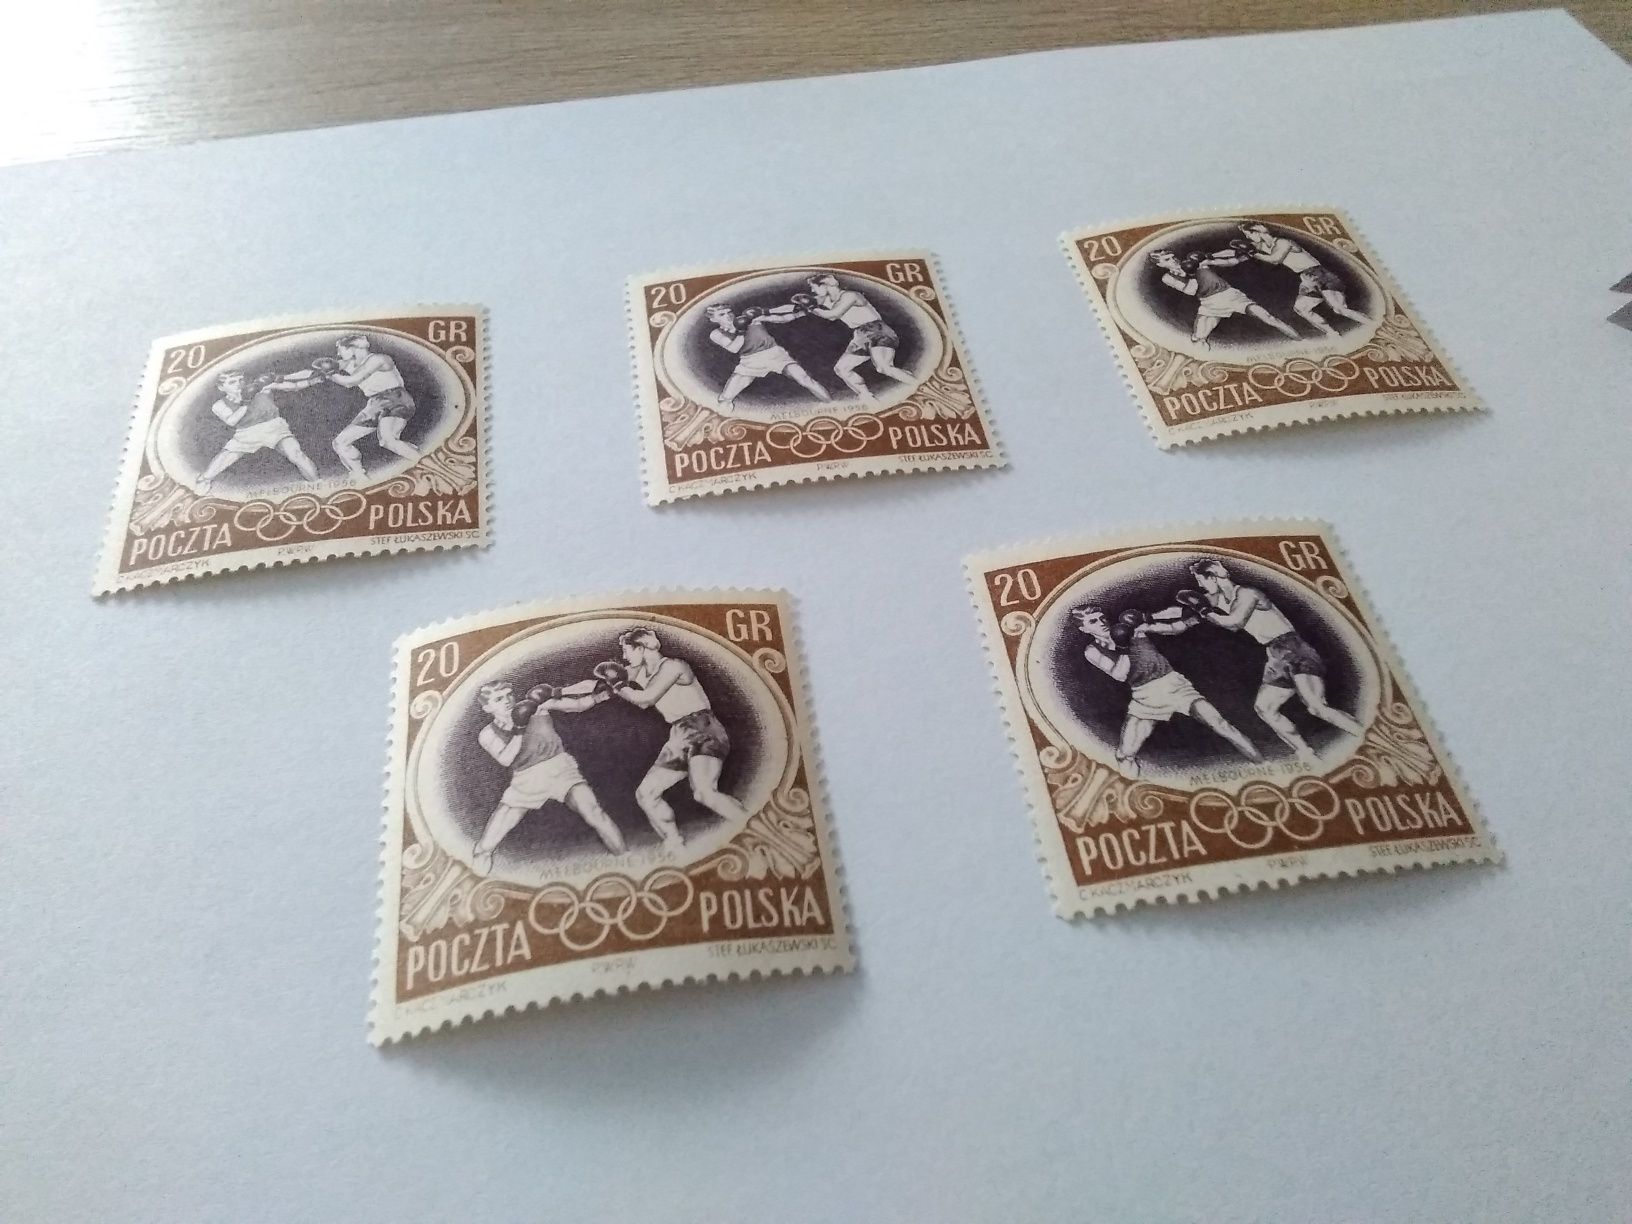 Znaczek pocztowy Bokserzy z 1956 roku. Znaczki pocztowe z czasów PRL-u